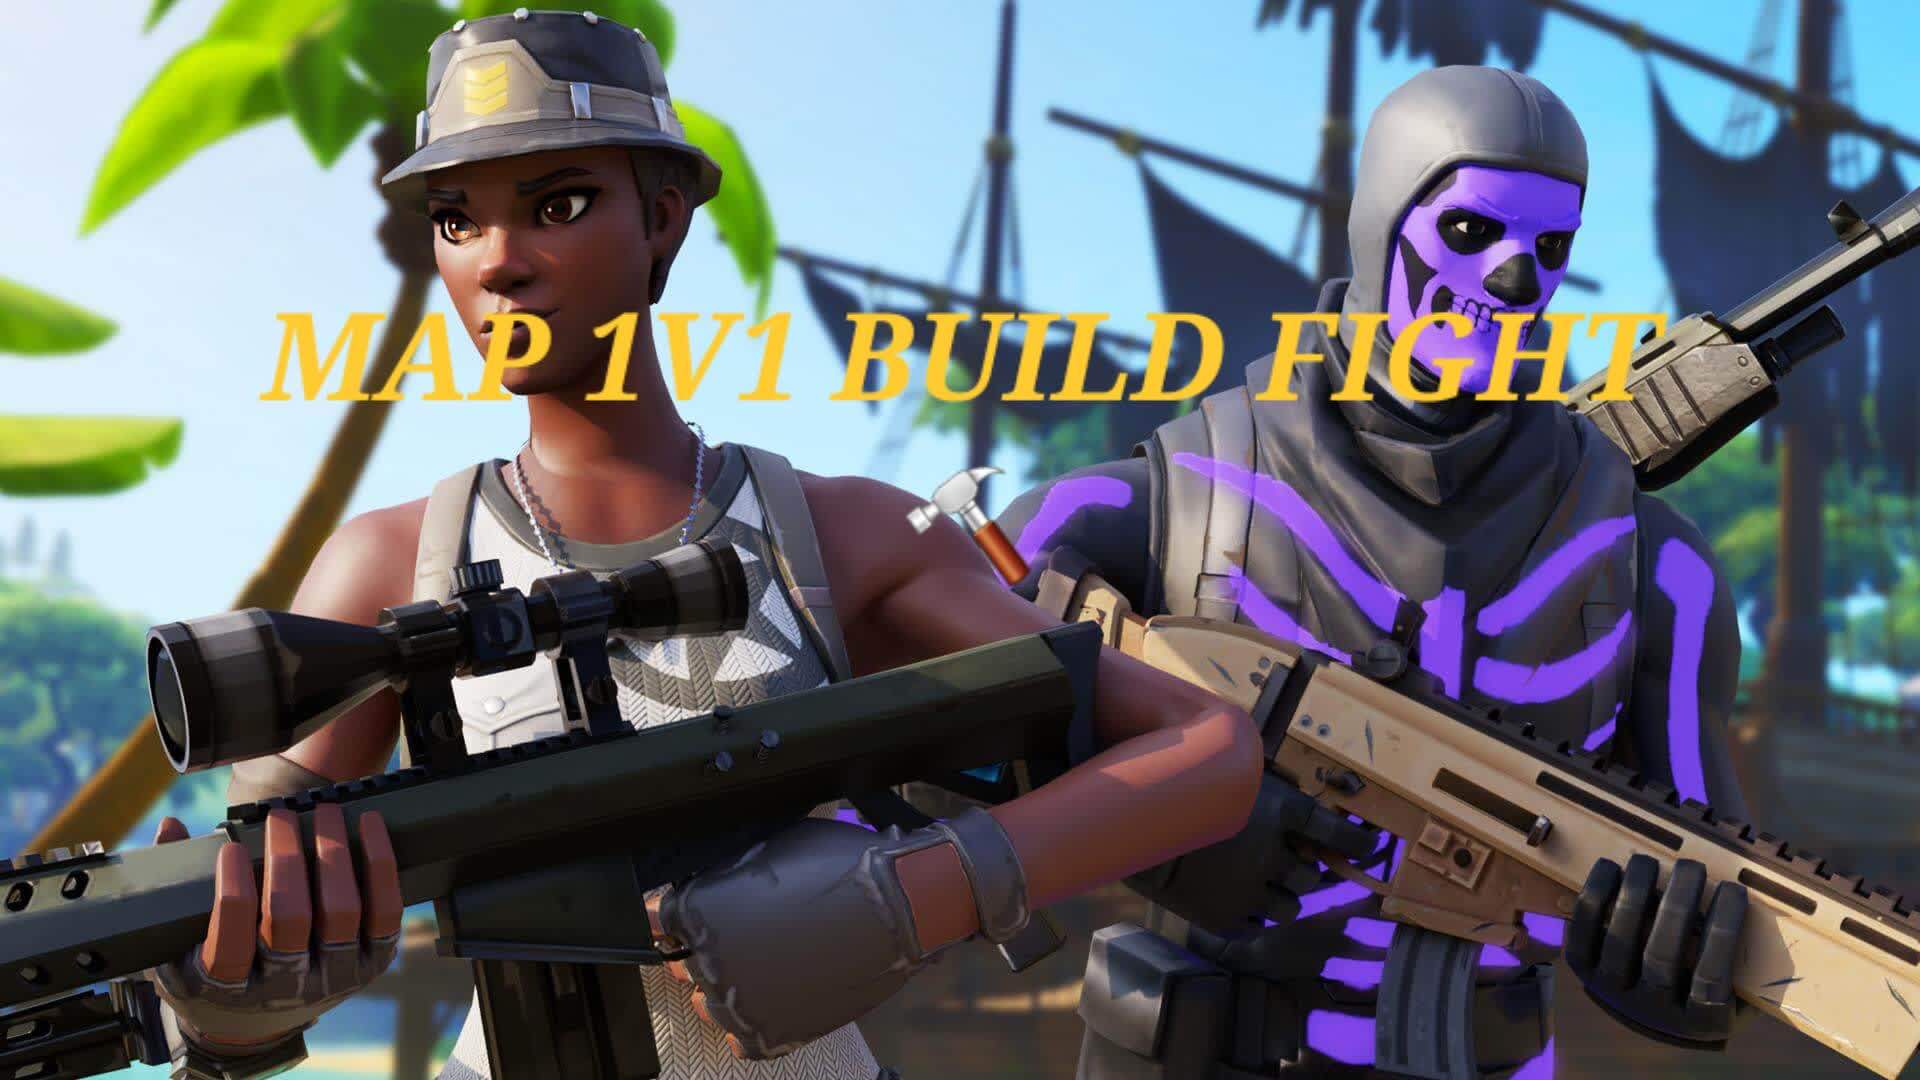 1V1 build fight